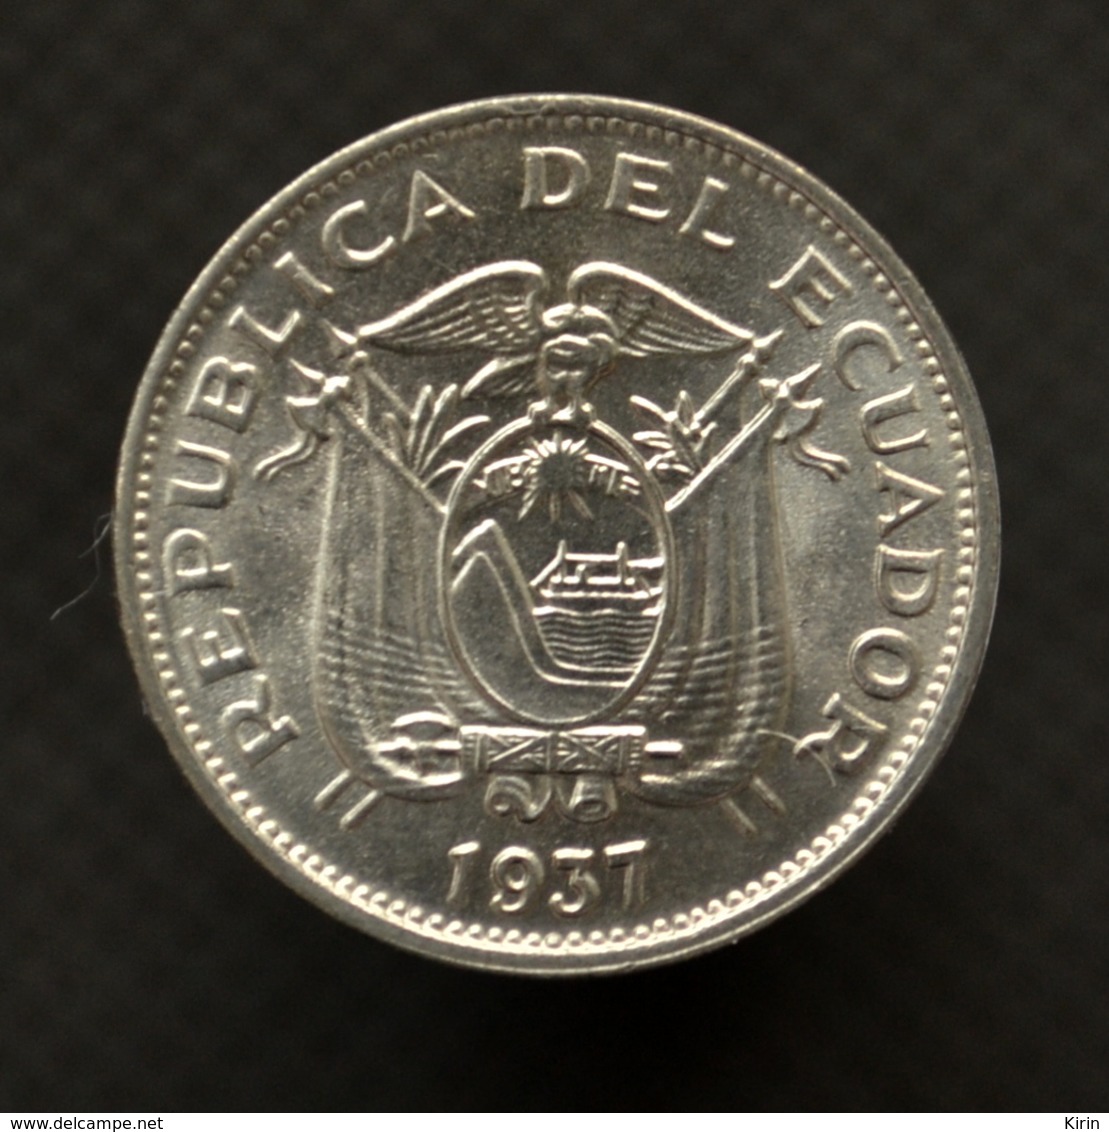 Ecuador 10 Centavos 1937. Km76. UNC. South America Coin. - Ecuador